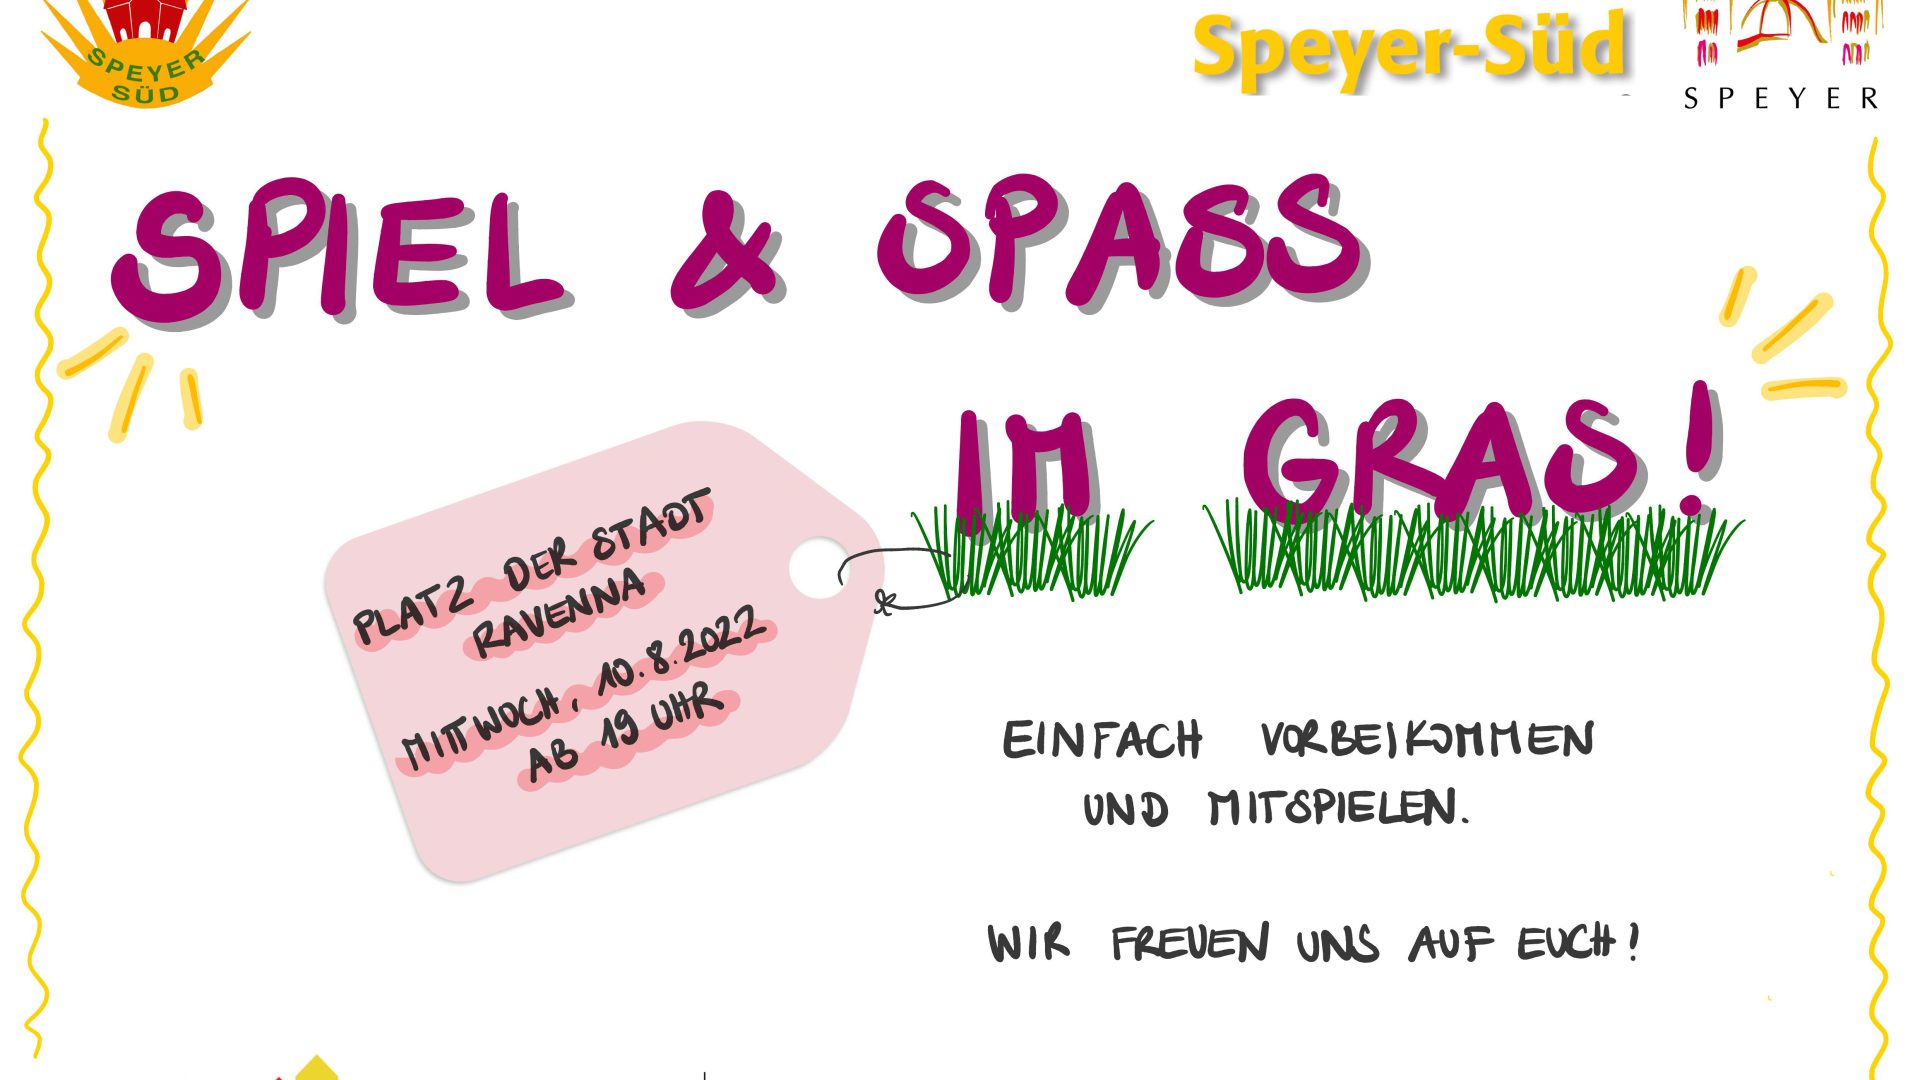 speyer_sued_spiel_spass